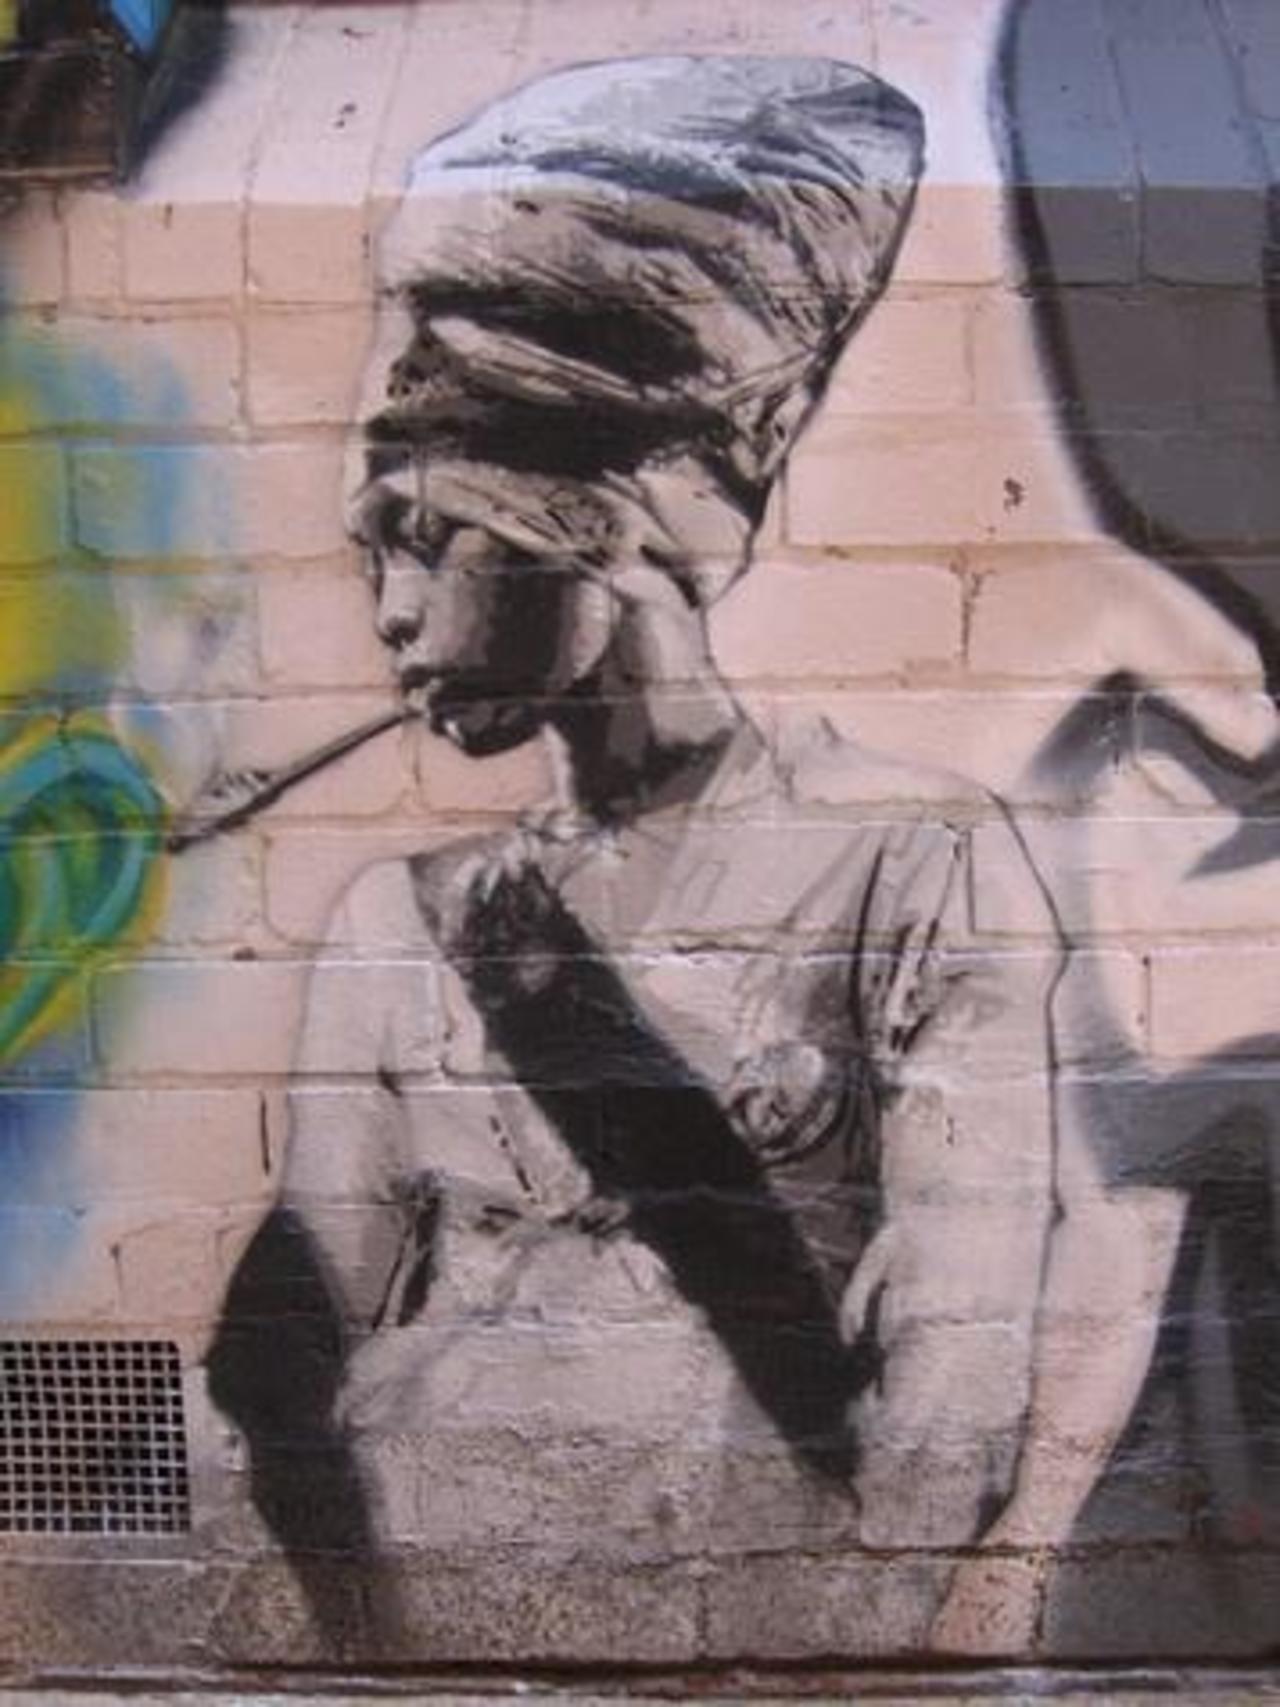 Afro Stylistic #streetart #graffiti #afro #art #funky #dope . : http://t.co/DlshyPtiSG